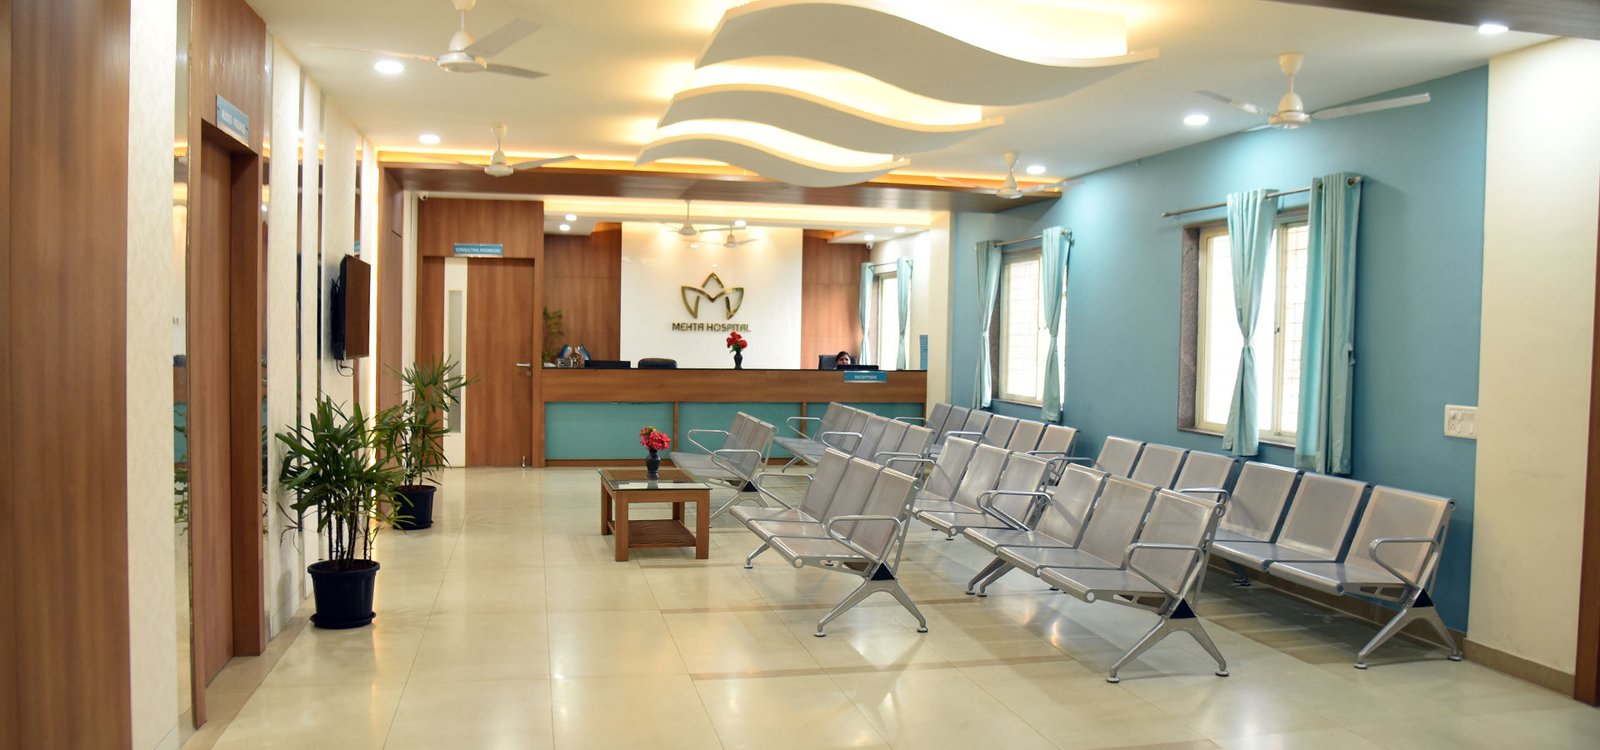 Mehta Hospital Waiting Lounge